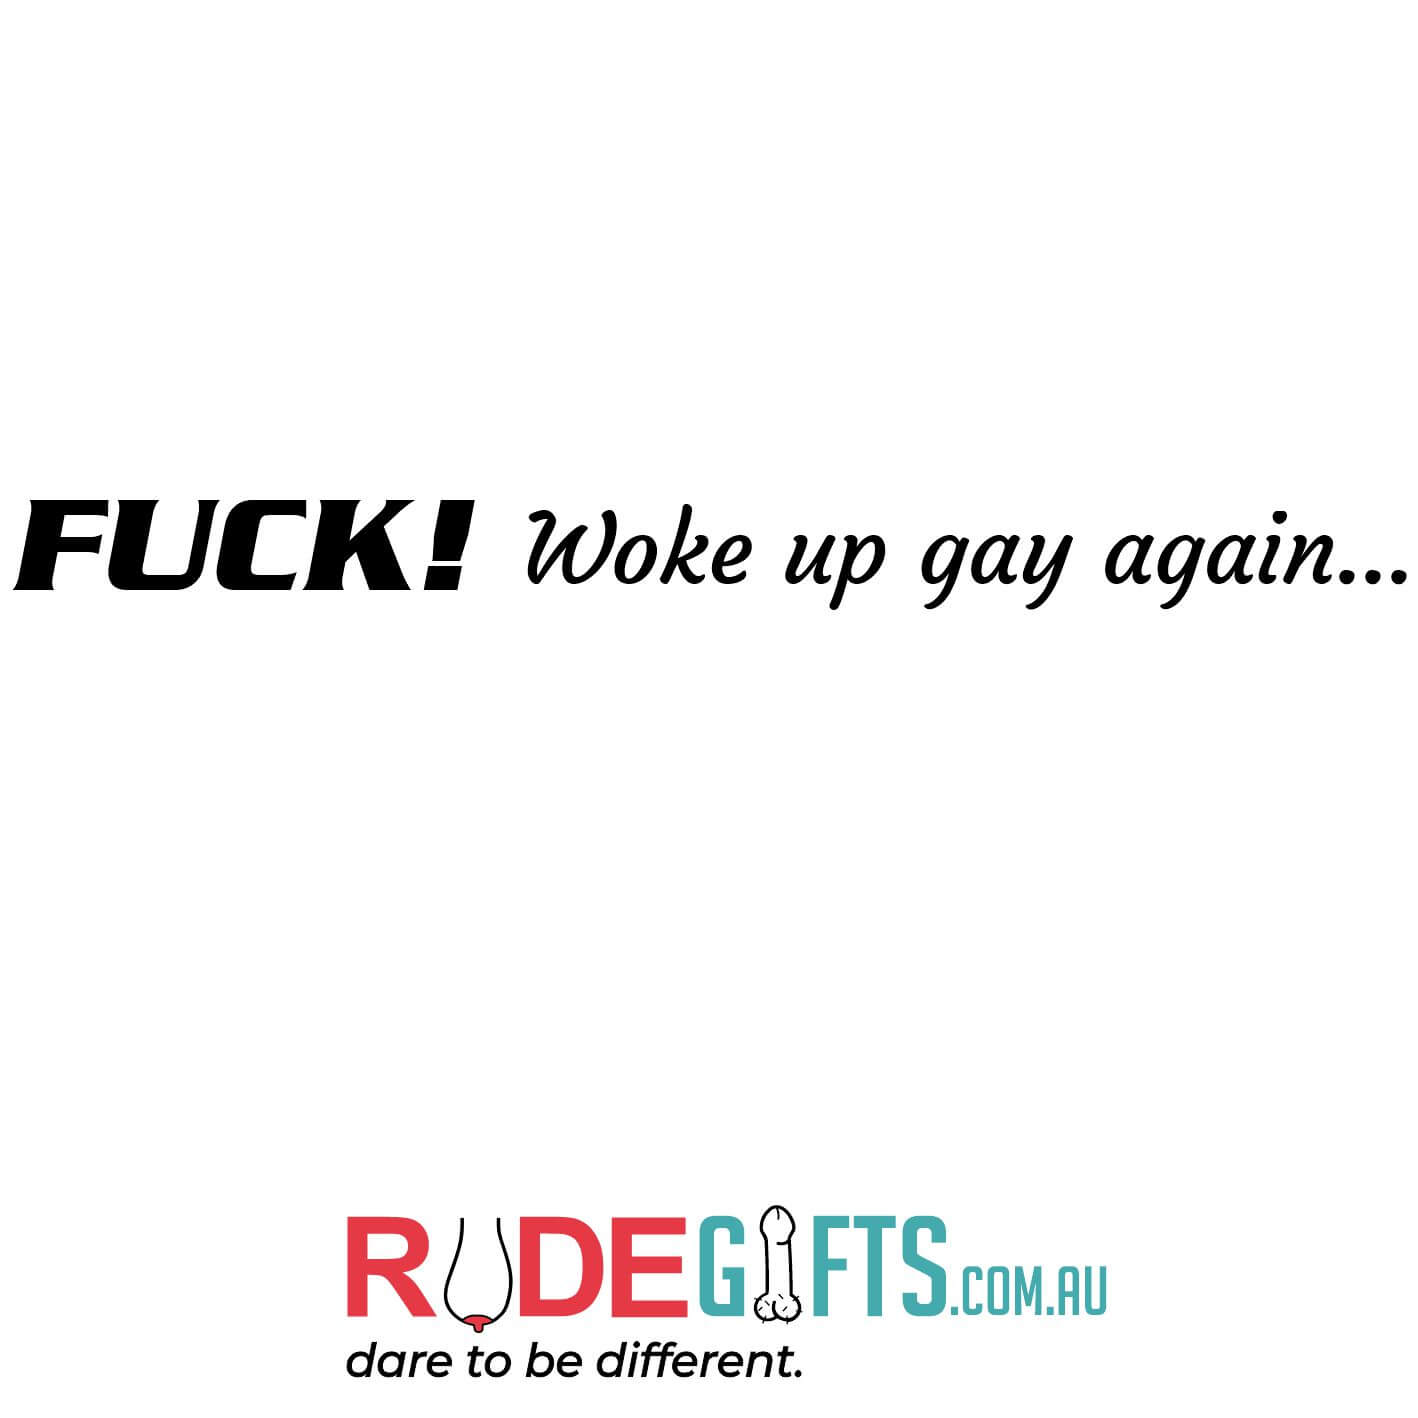 Fuck! Woke up gay again...